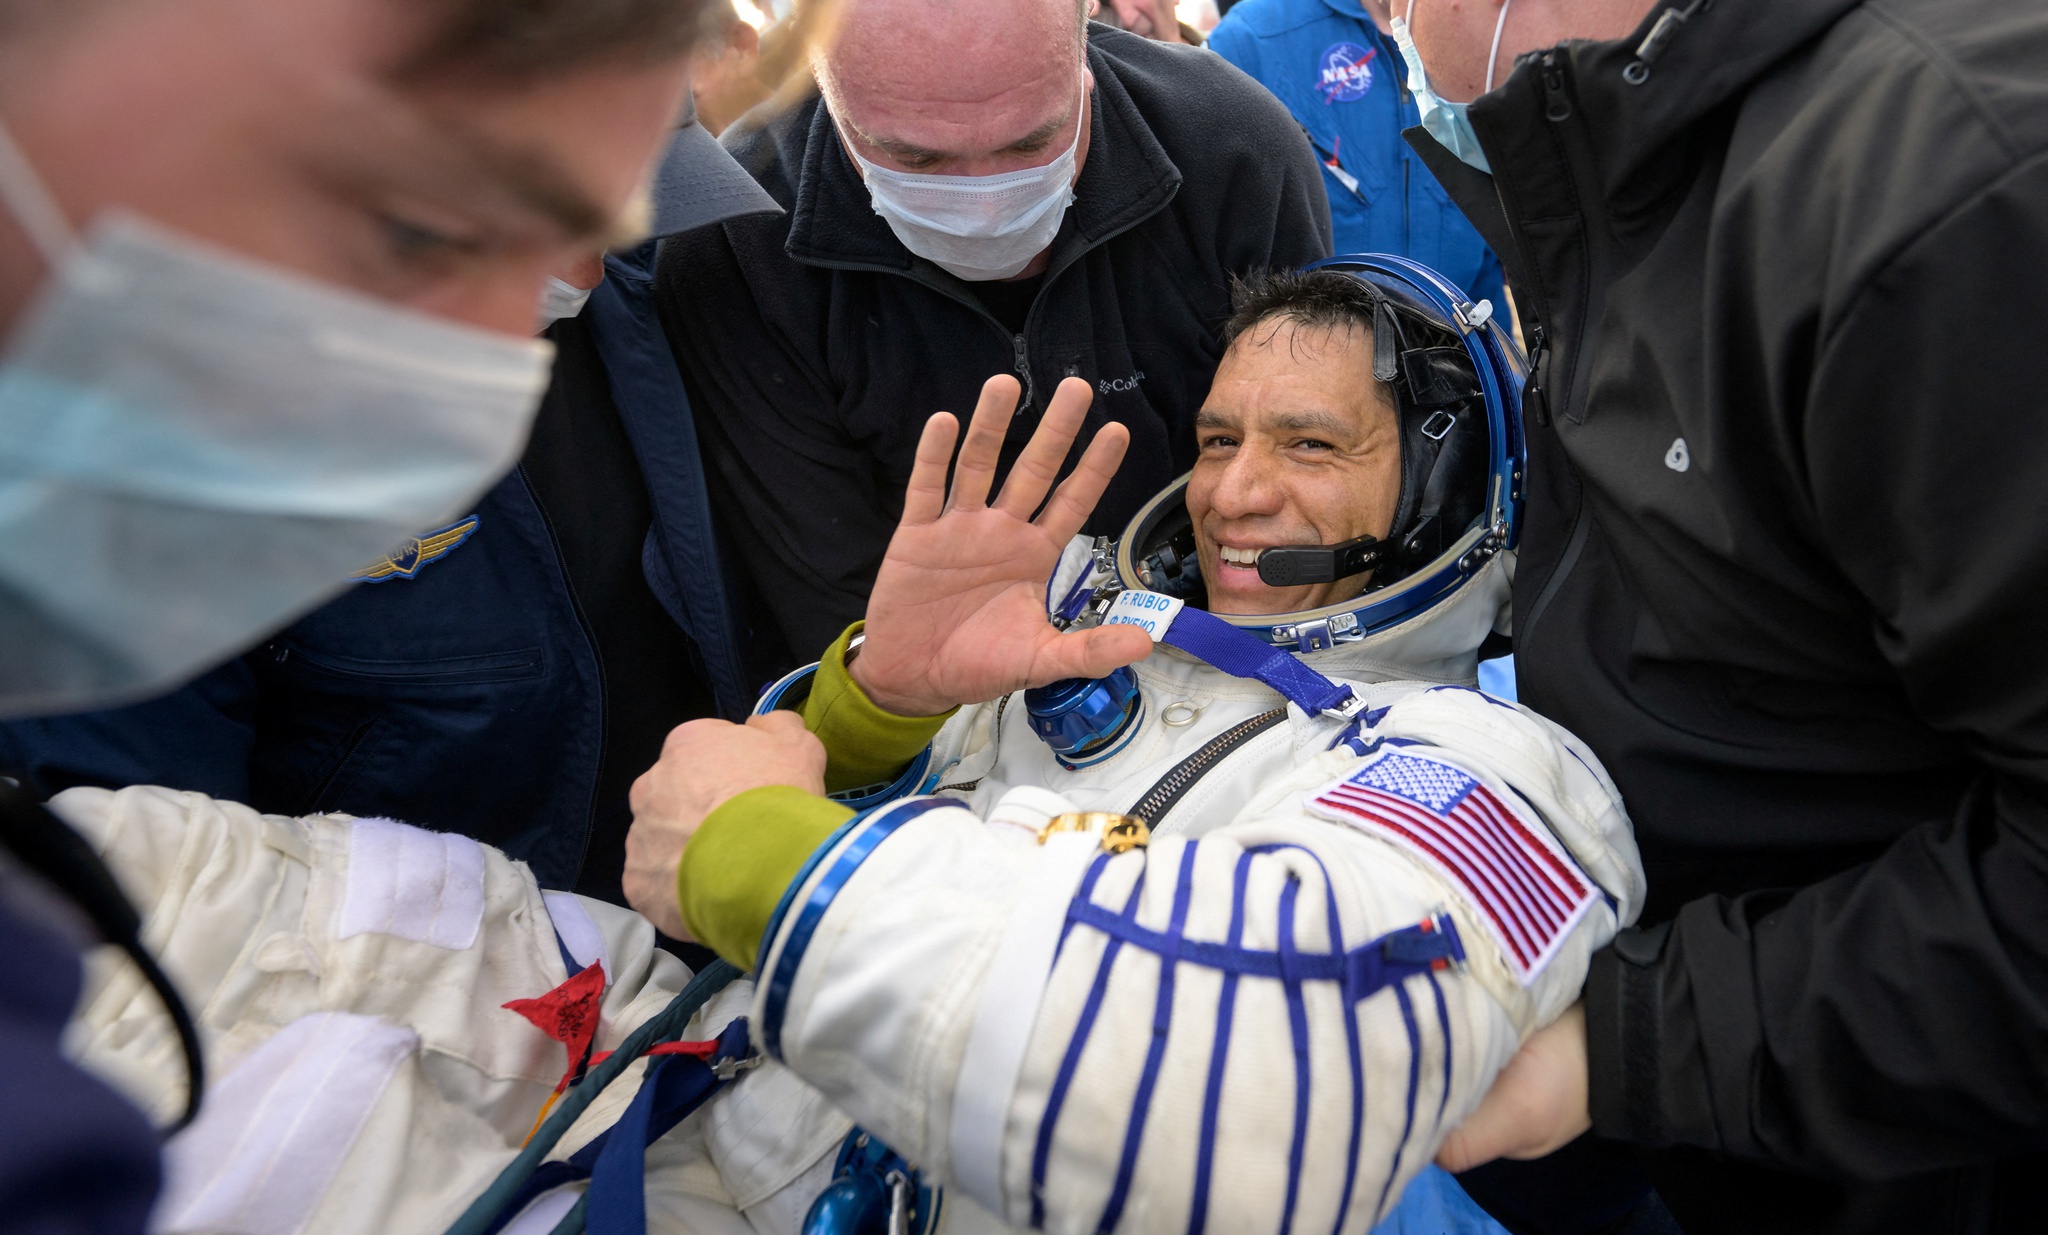 Frank Rubio regresó a la Tierra después de más de un año en el espacio |  Espacio